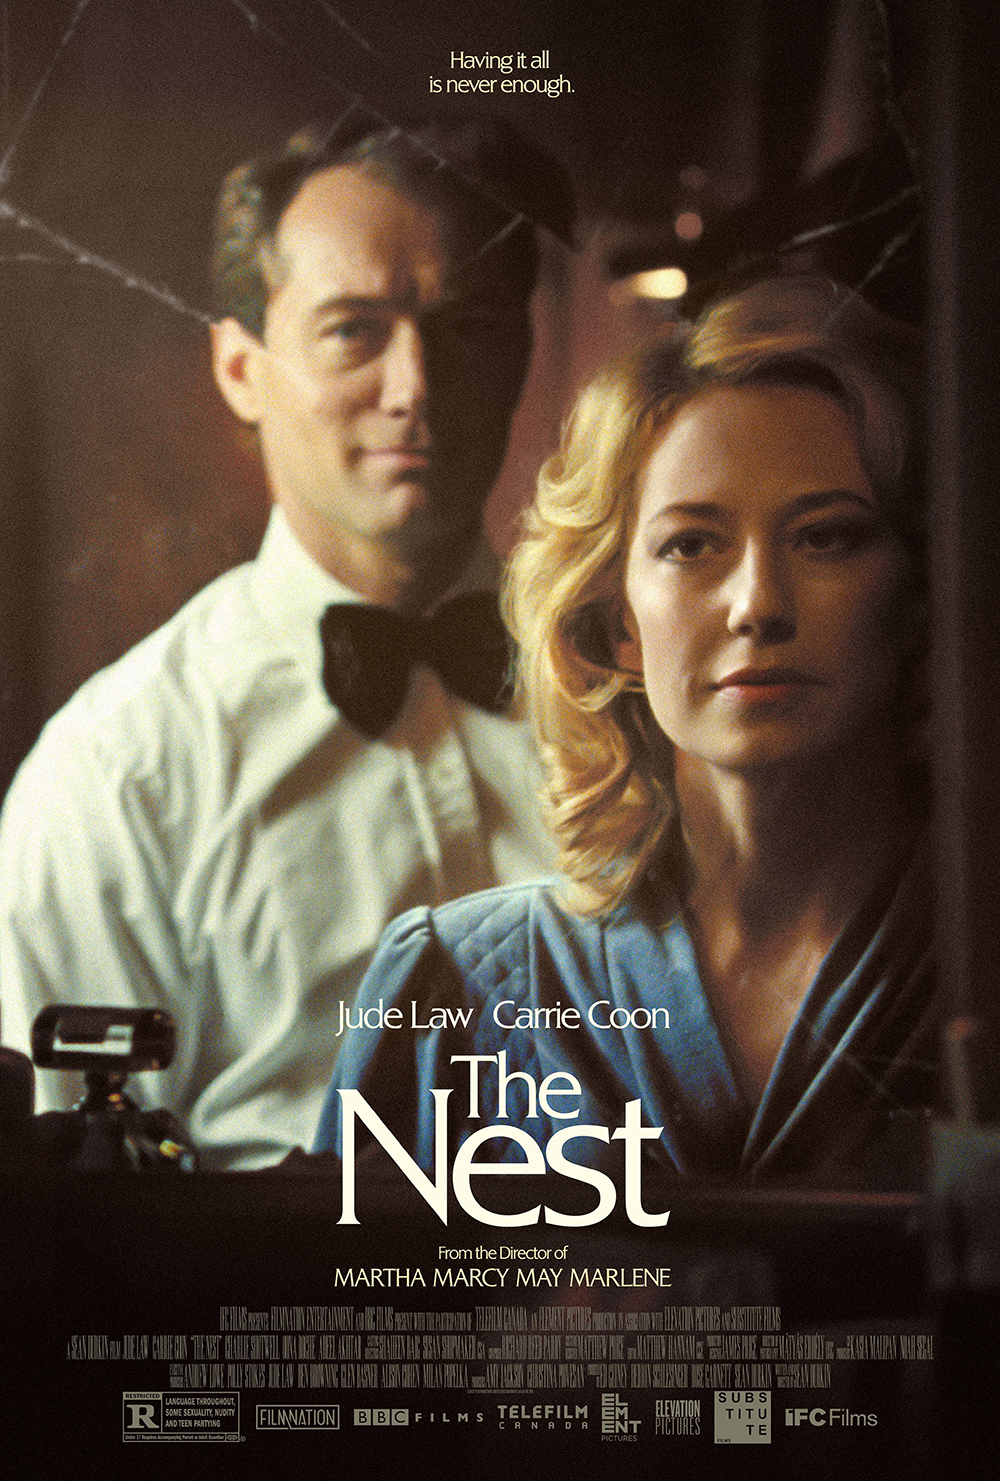 Sean Durkin's The Nest